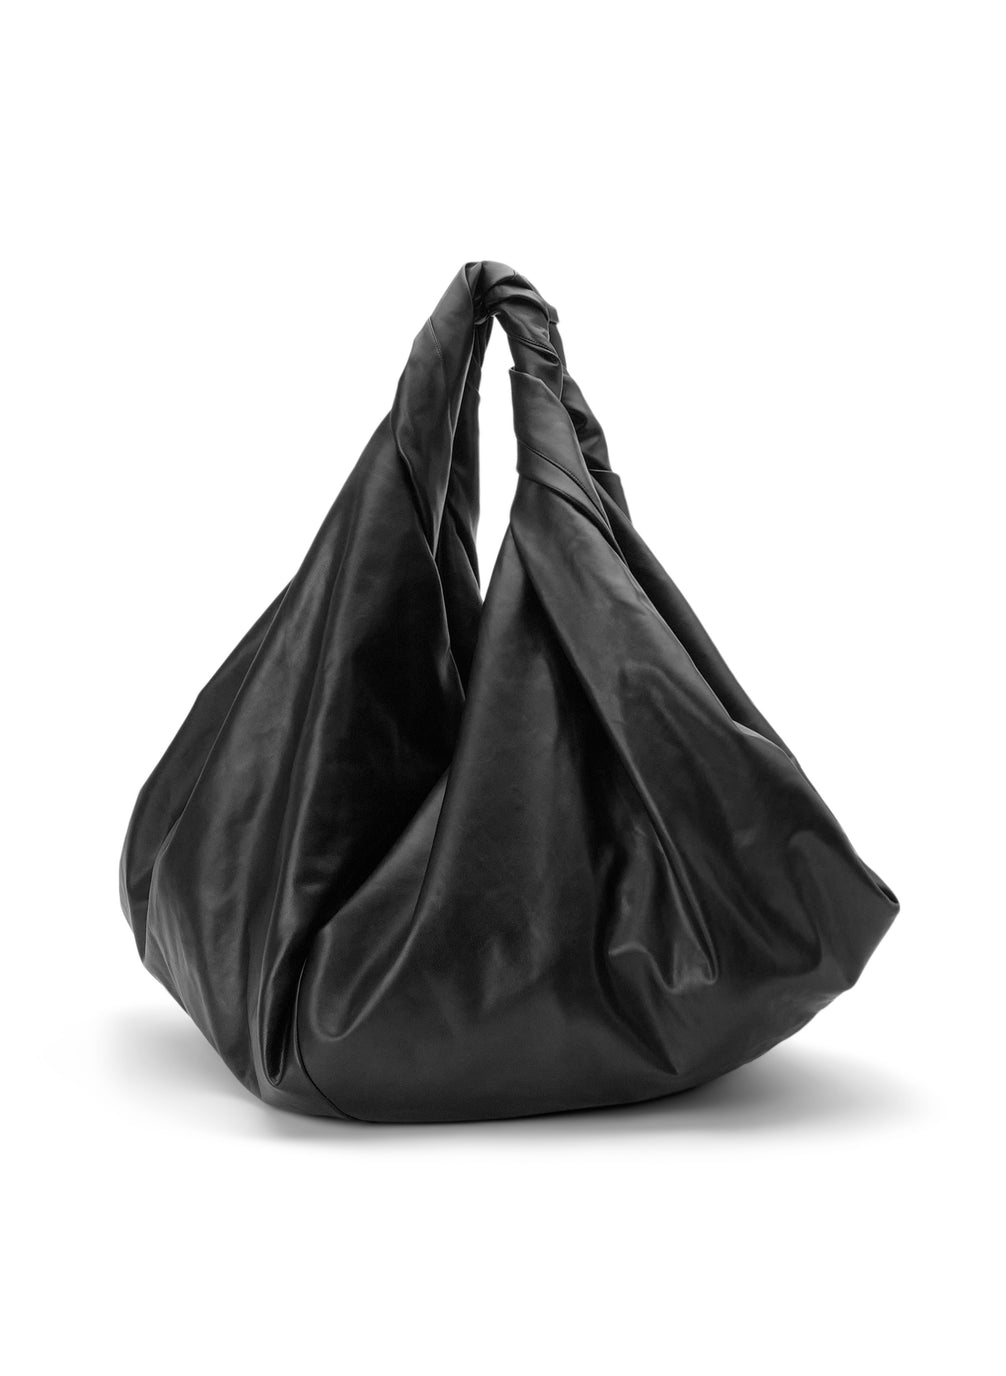 vegan leather purse